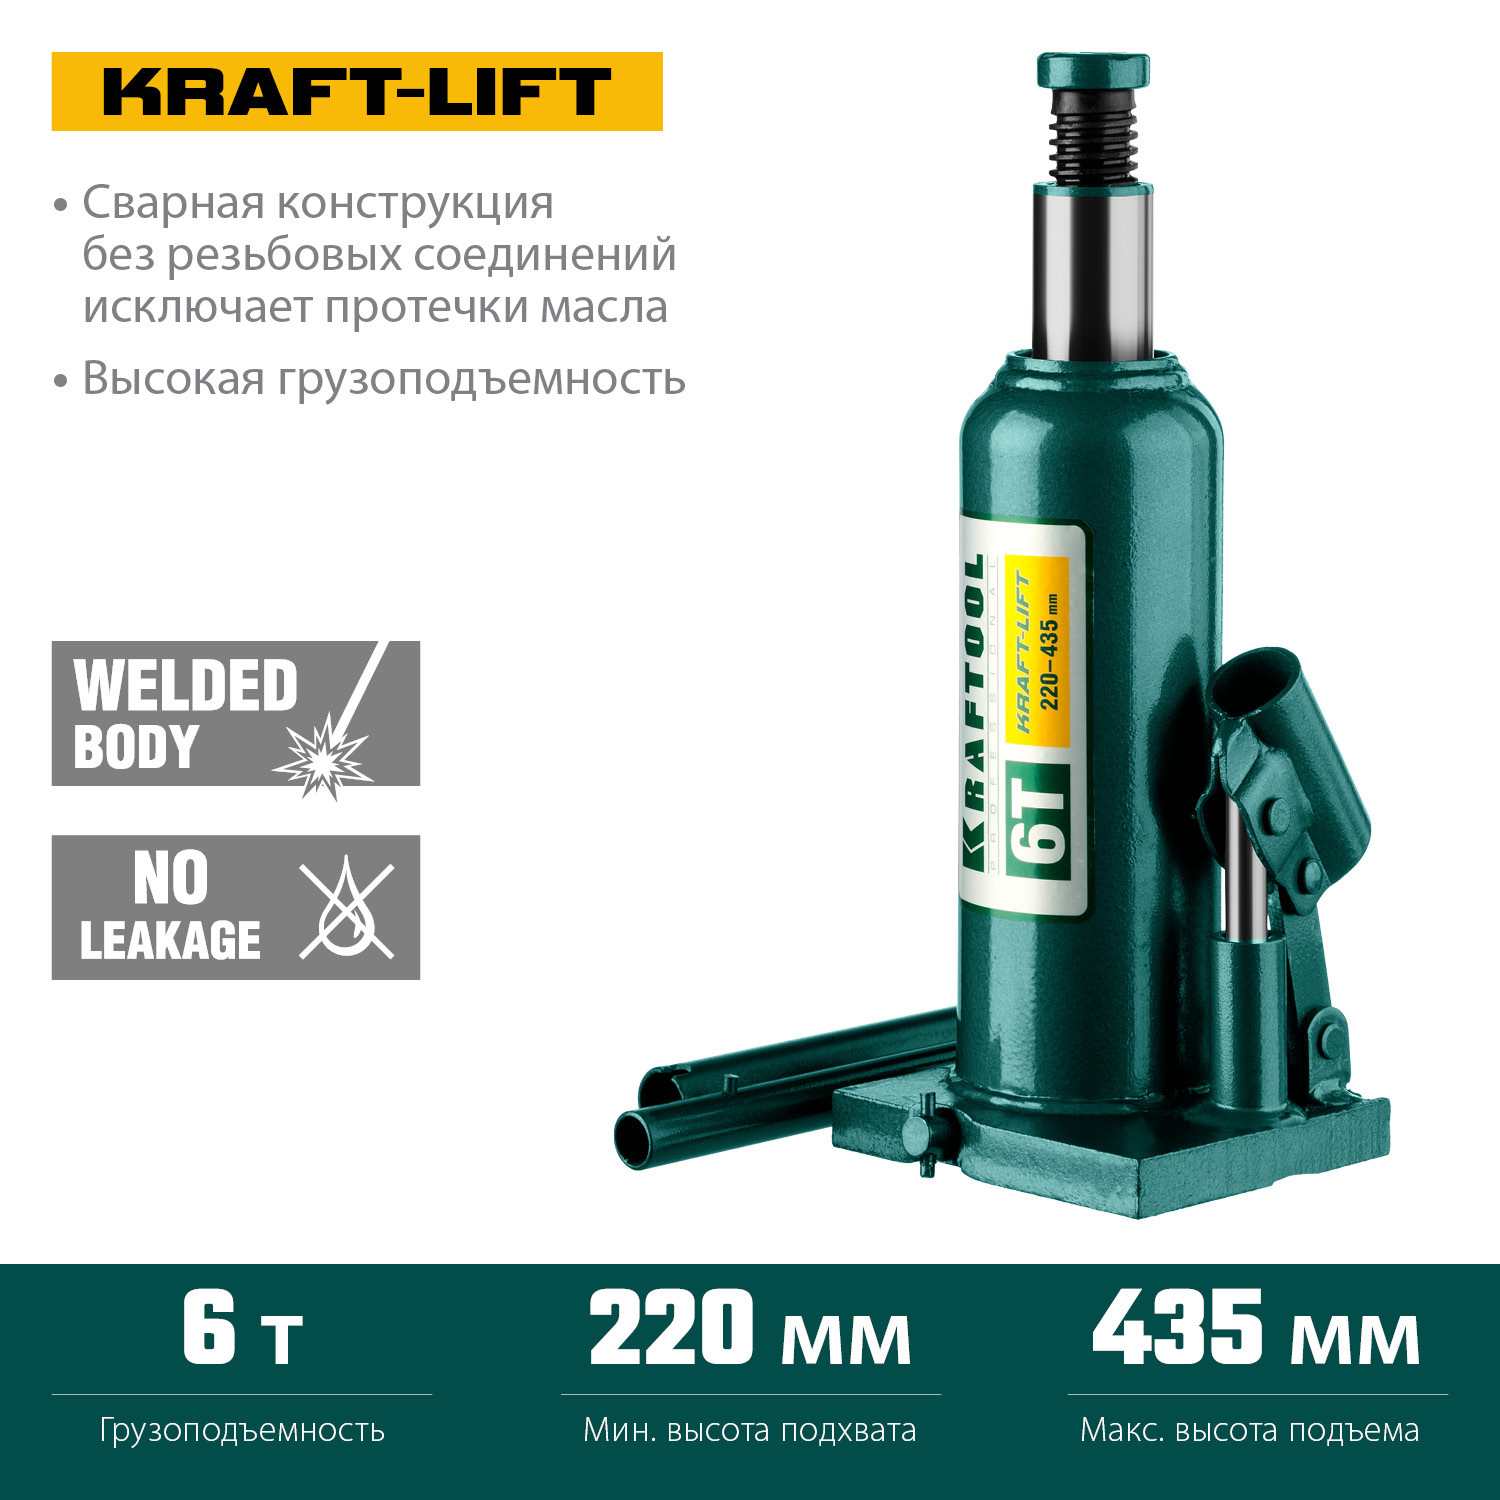 KRAFTOOL KRAFT-LIFT, 6 т, 216 - 413 мм, бутылочный гидравлический домкрат (43462-6)